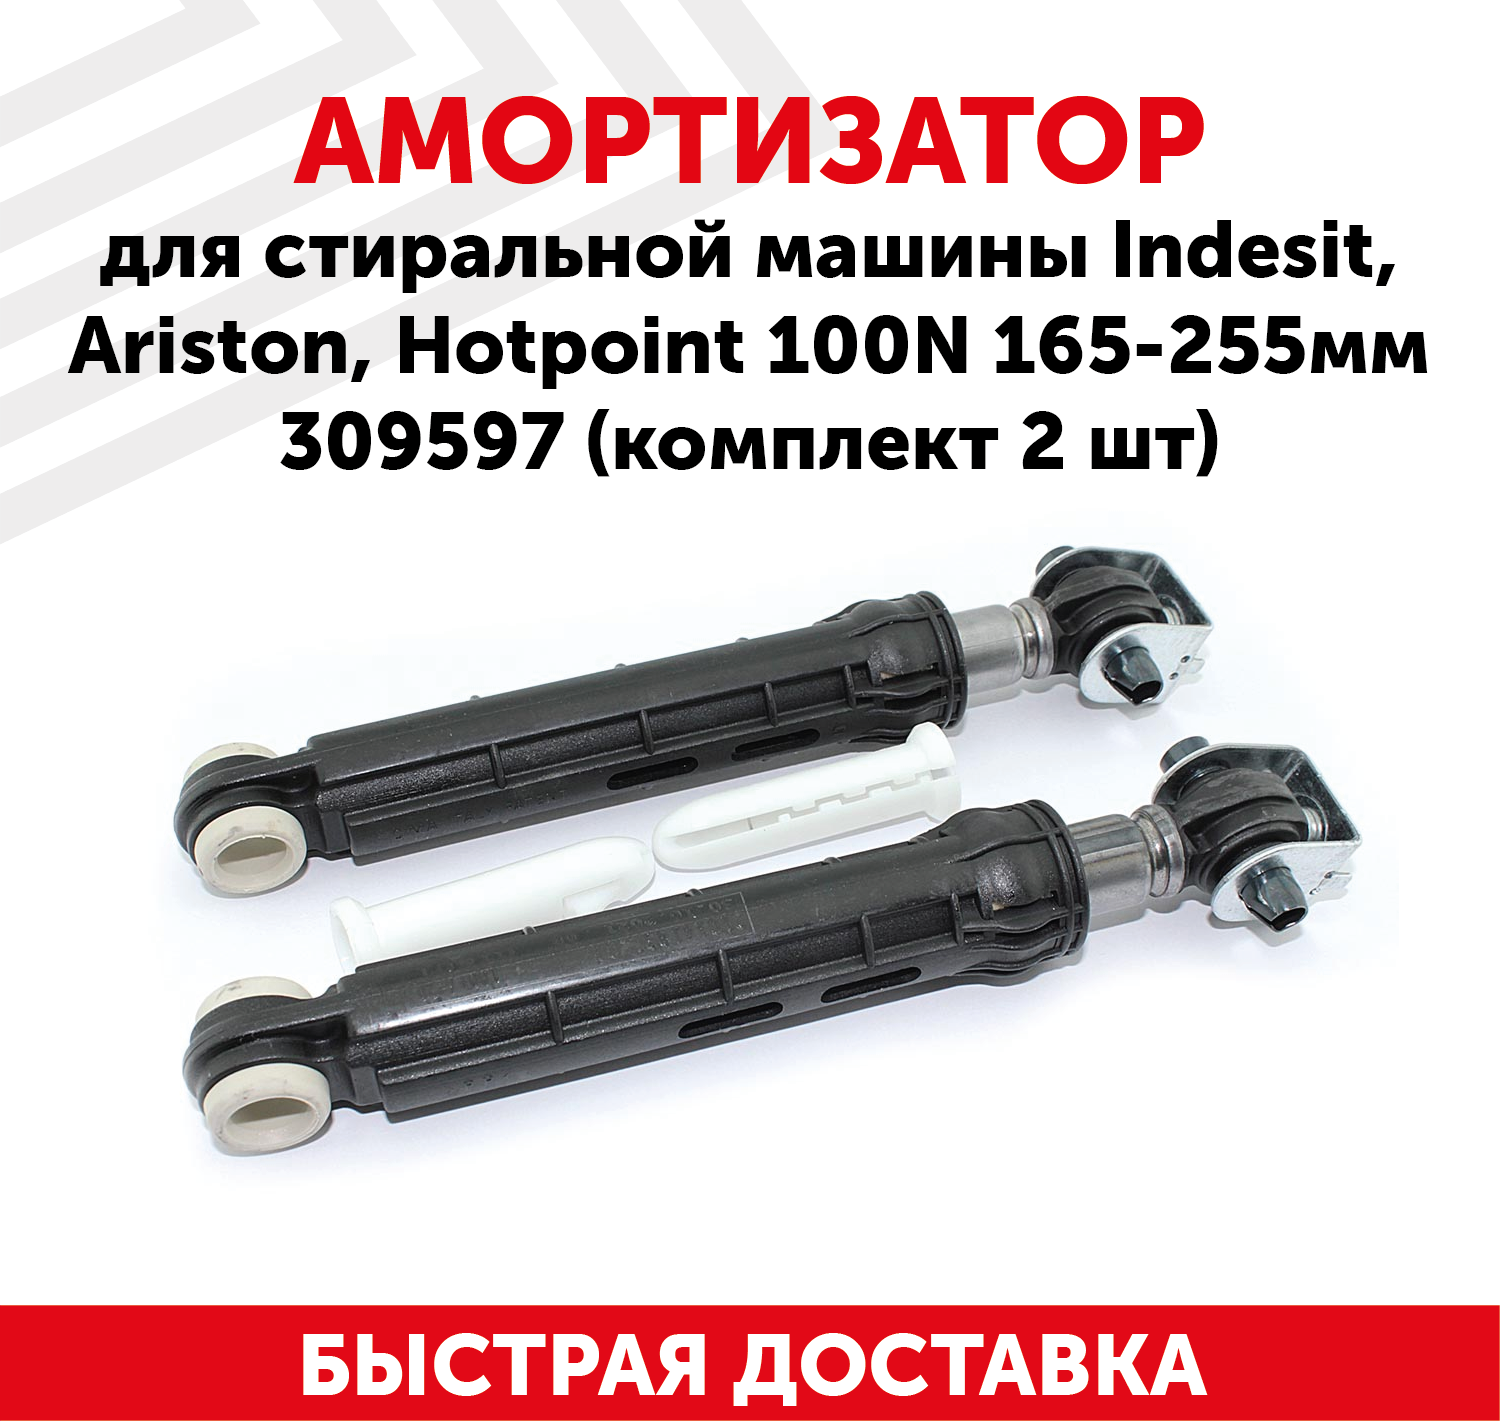 Амортизатор для стиральной машины Indesit, Ariston, Hotpoint 100N, 165-255мм, 309597 (комплект 2 шт)